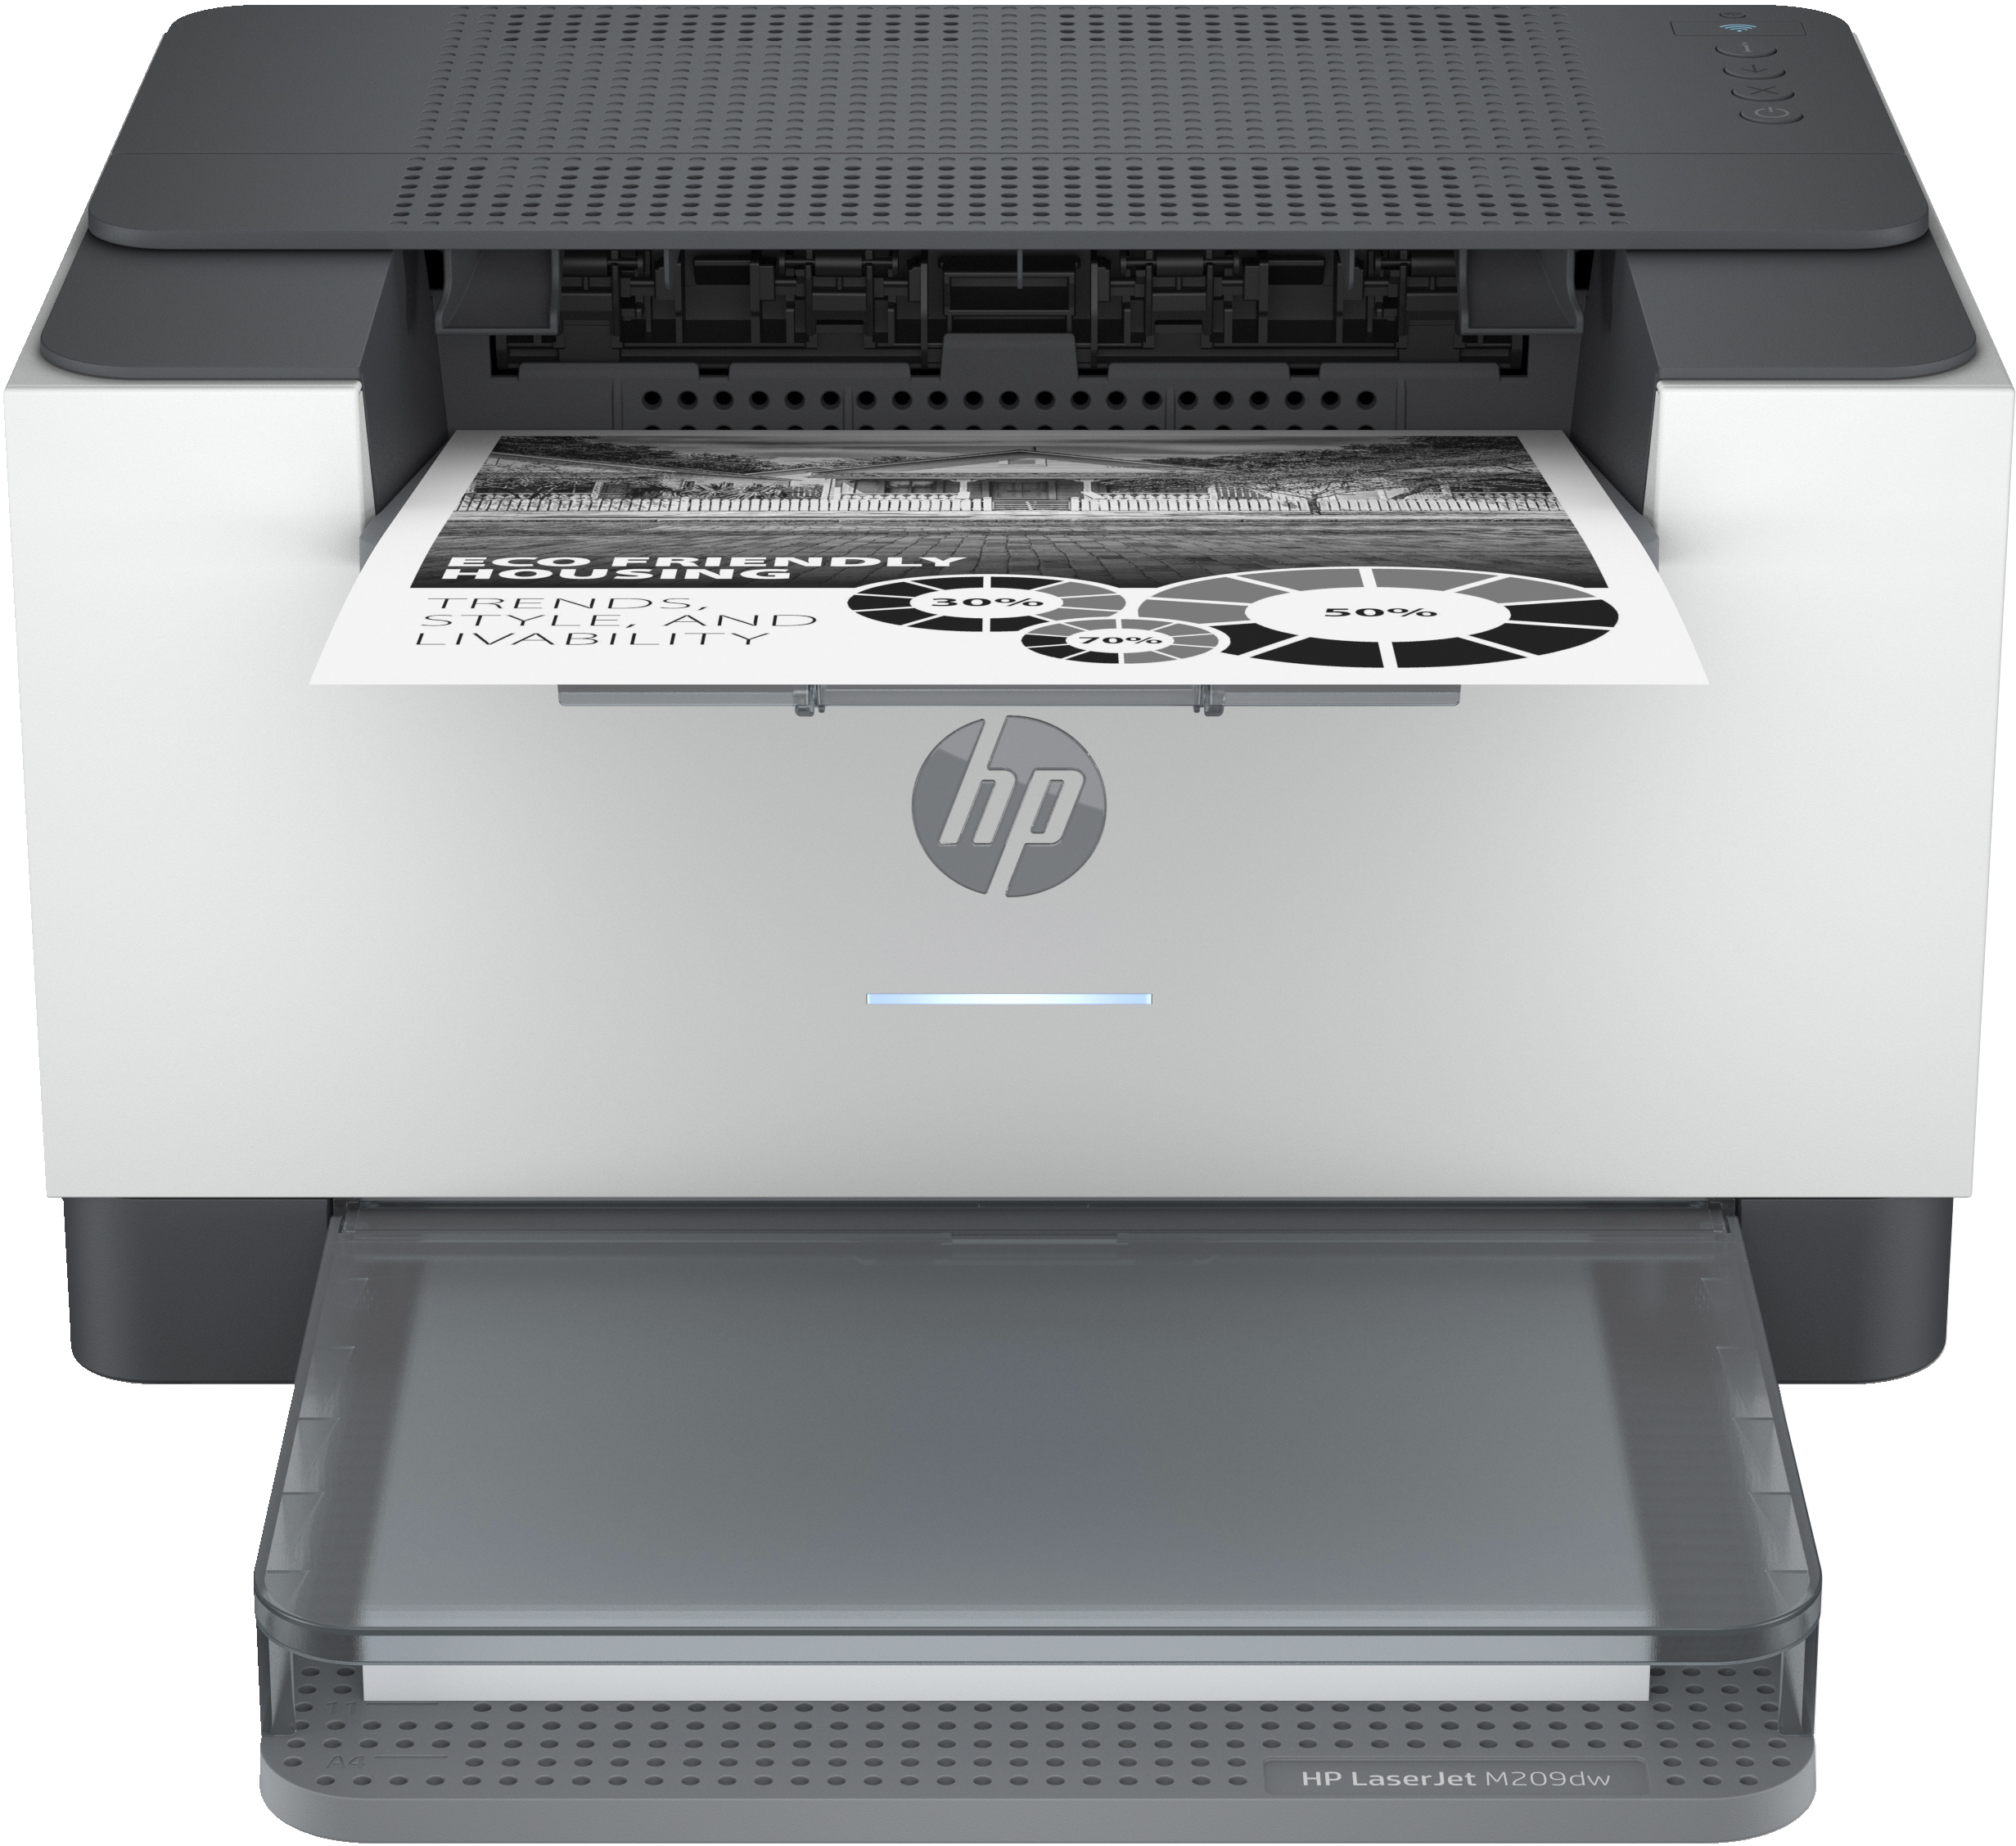 teller Krijt Emulatie HP HP LaserJet M209dw printer, Zwart-wit, Printer voor Thuis en  thuiskantoor, Print, Dubbelzijdig printen; Compact formaat; Energiezuinig;  Dual-band Wi-Fi (6GW62F#B19) - Dustin België